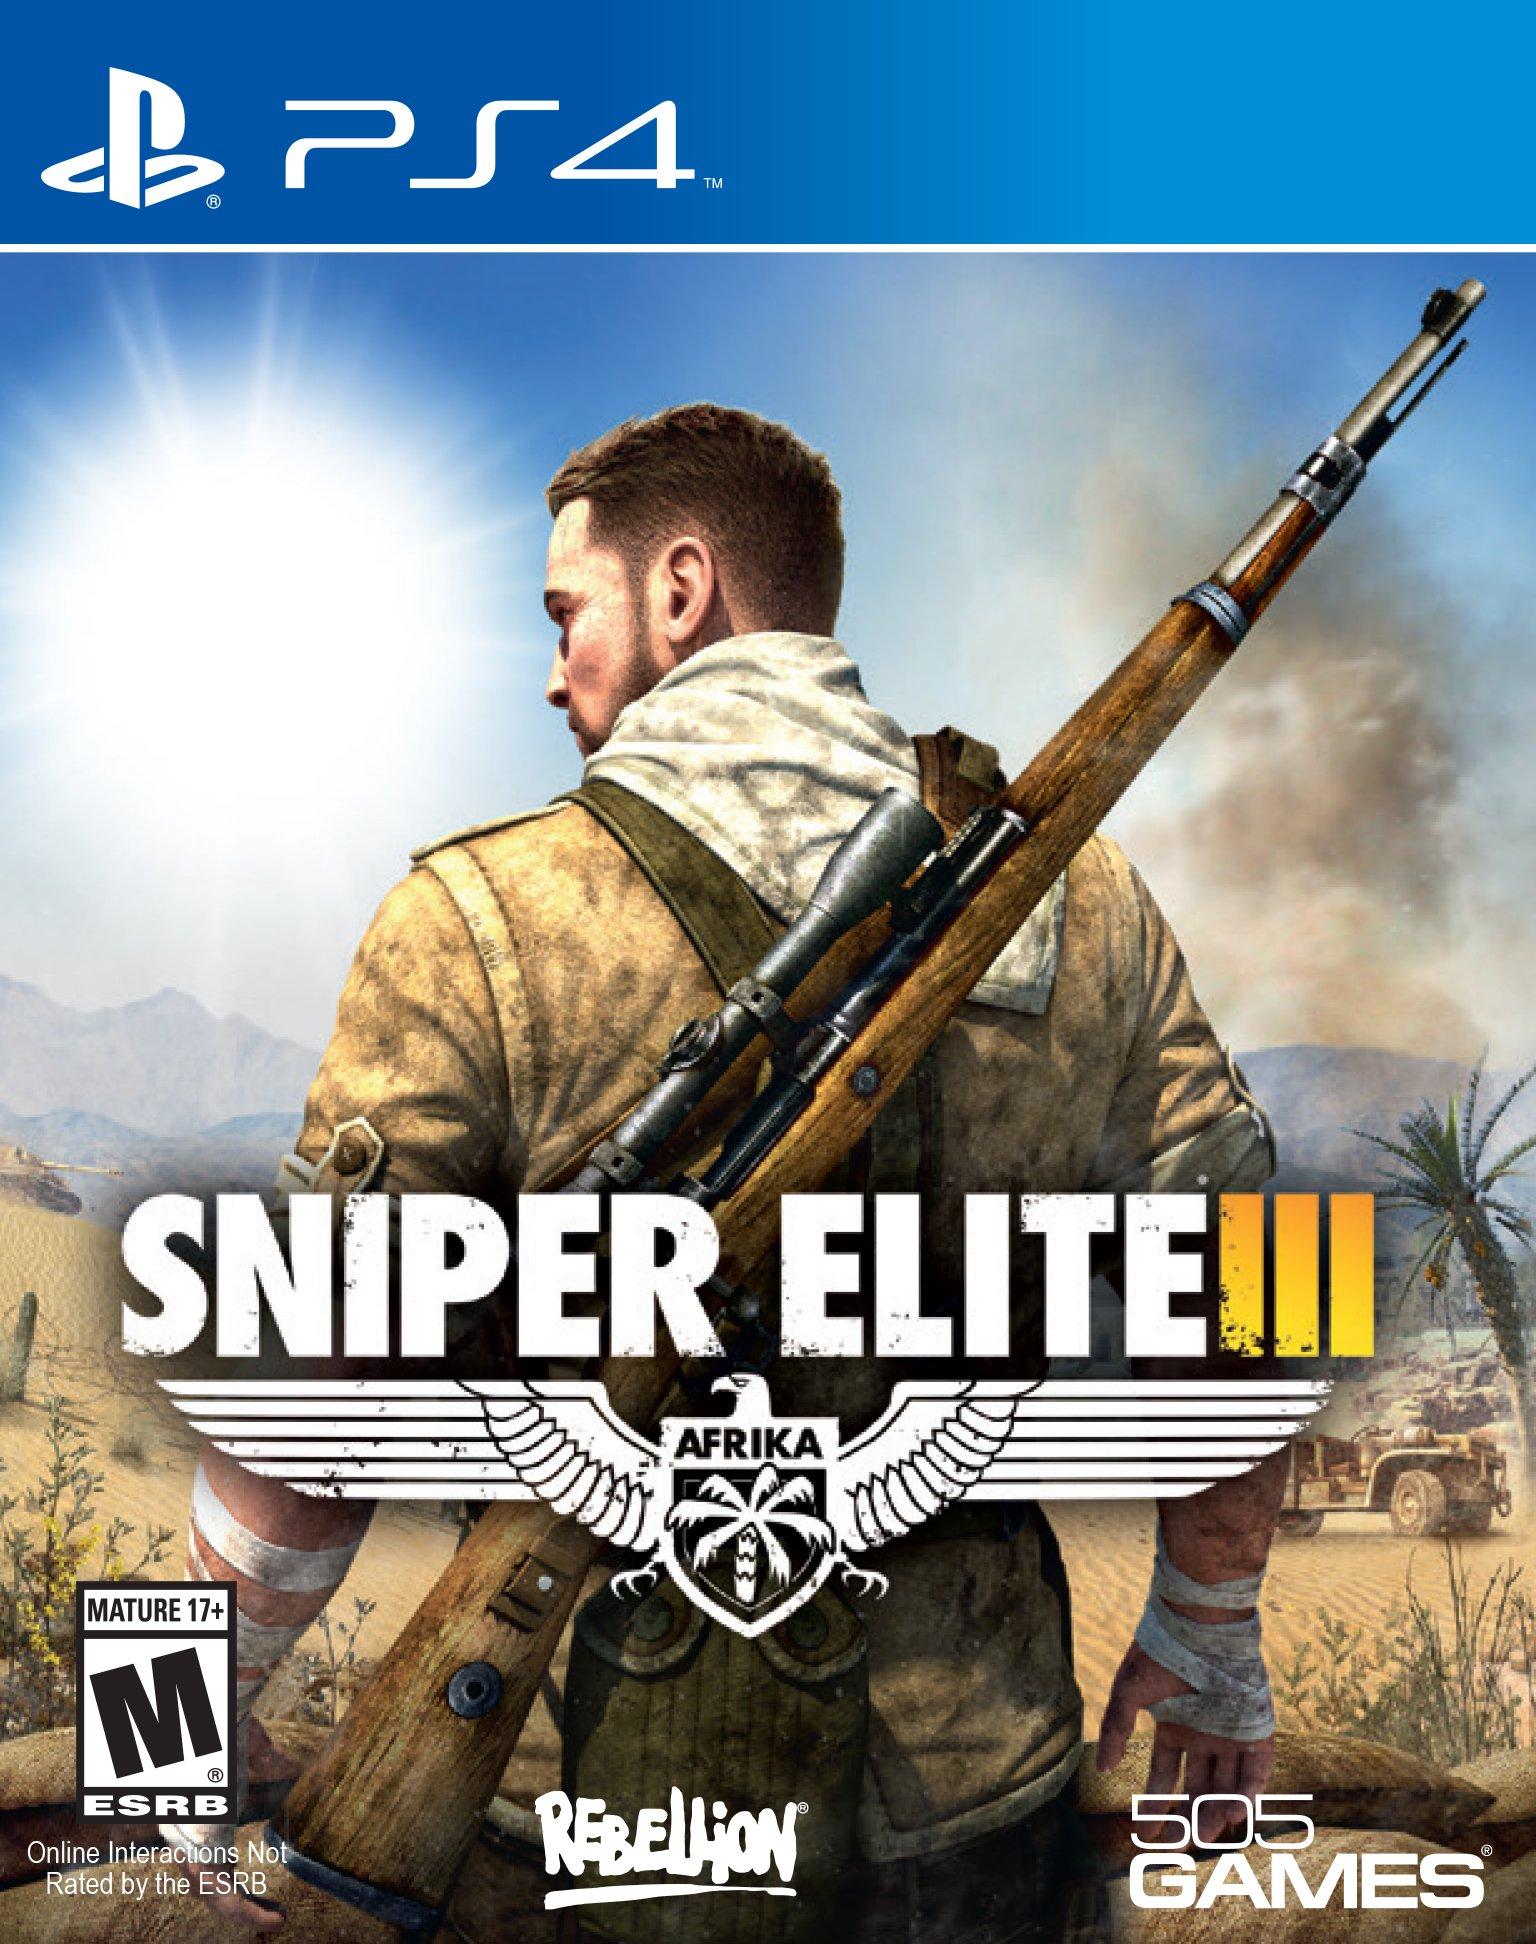 Sniper elite 3 free